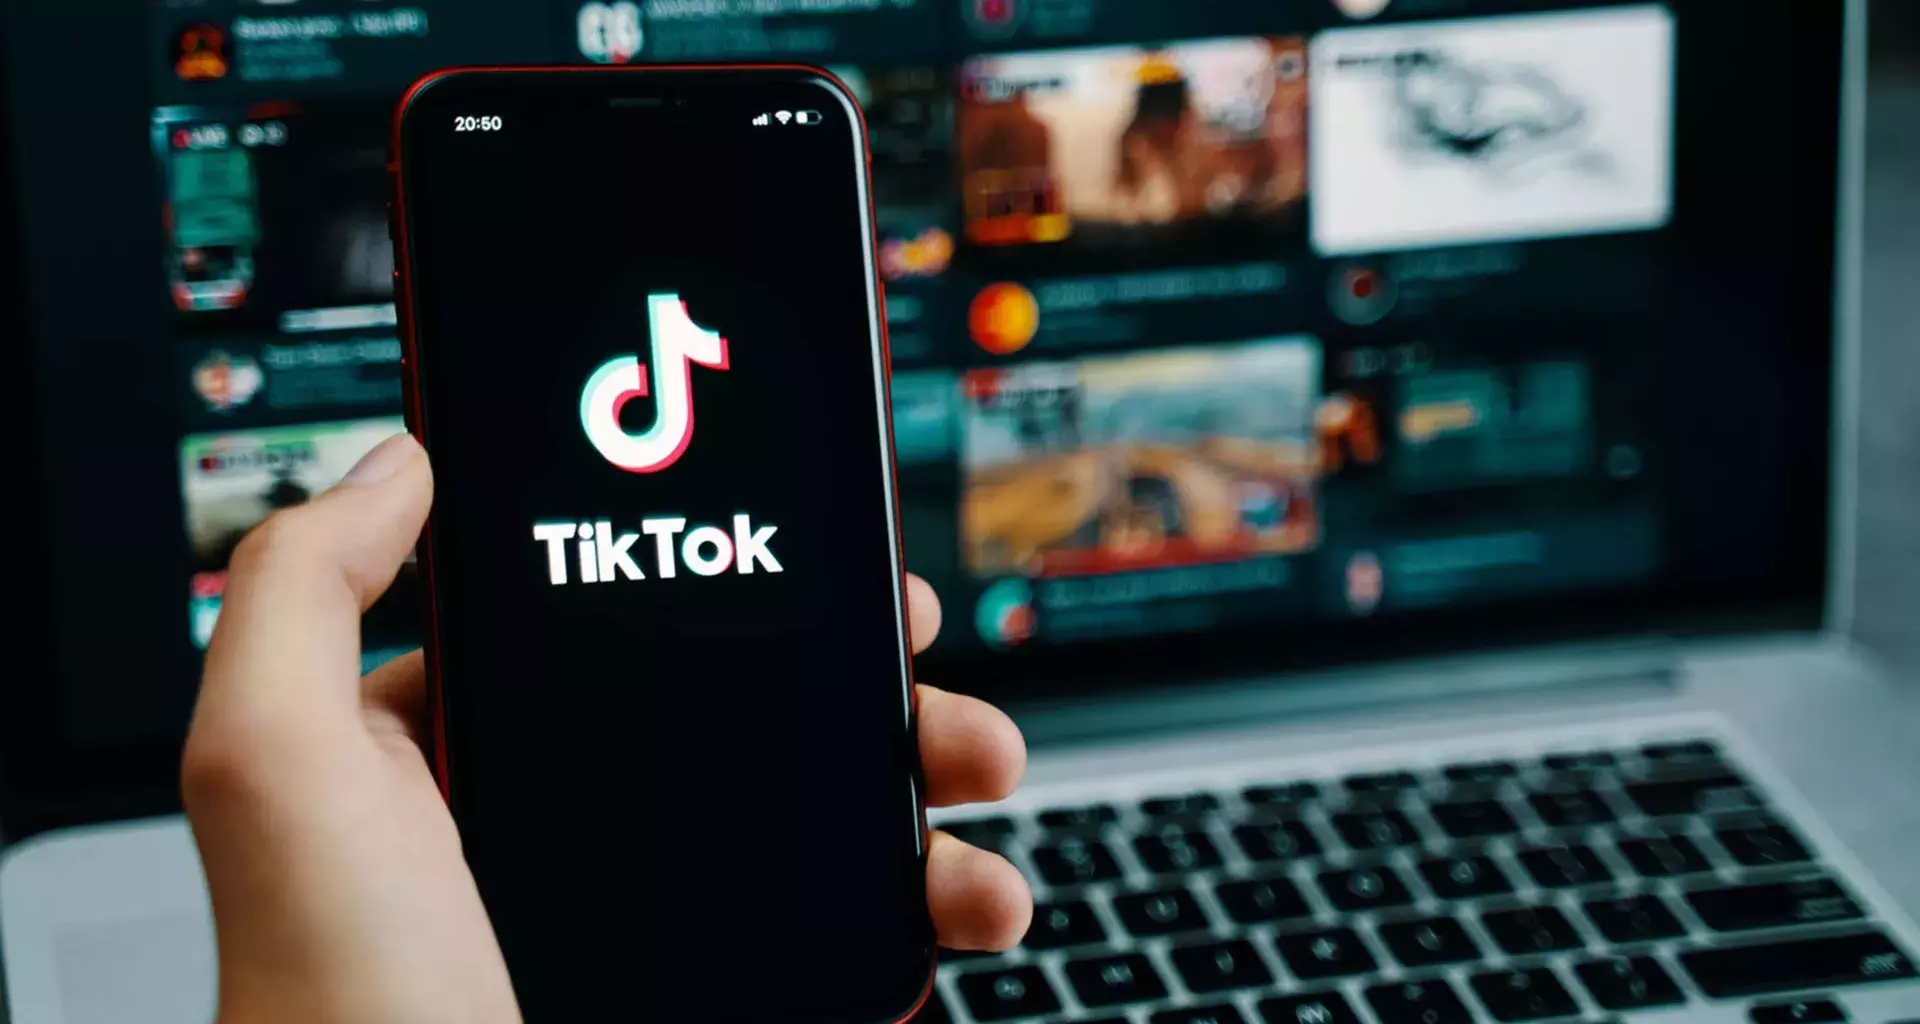 Durante una masterclass, influencers comparten los pasos para crear una campaña exitosa en TikTok